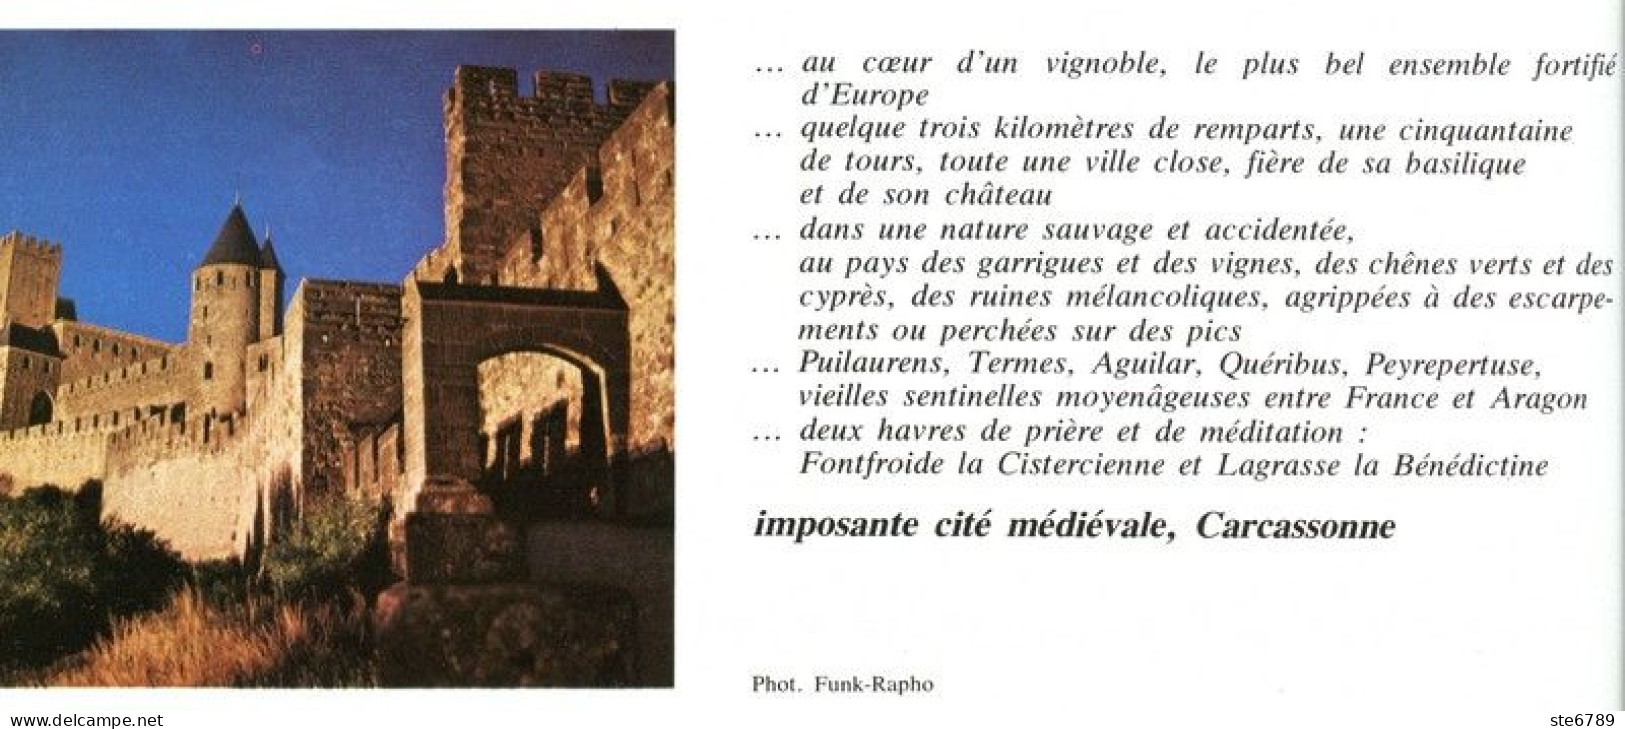 CARCASSONNE IMPOSANTE CITE MEDIEVALE   Revue Photos 1980 BEAUTES DE LA FRANCE N° 7 - Geografía